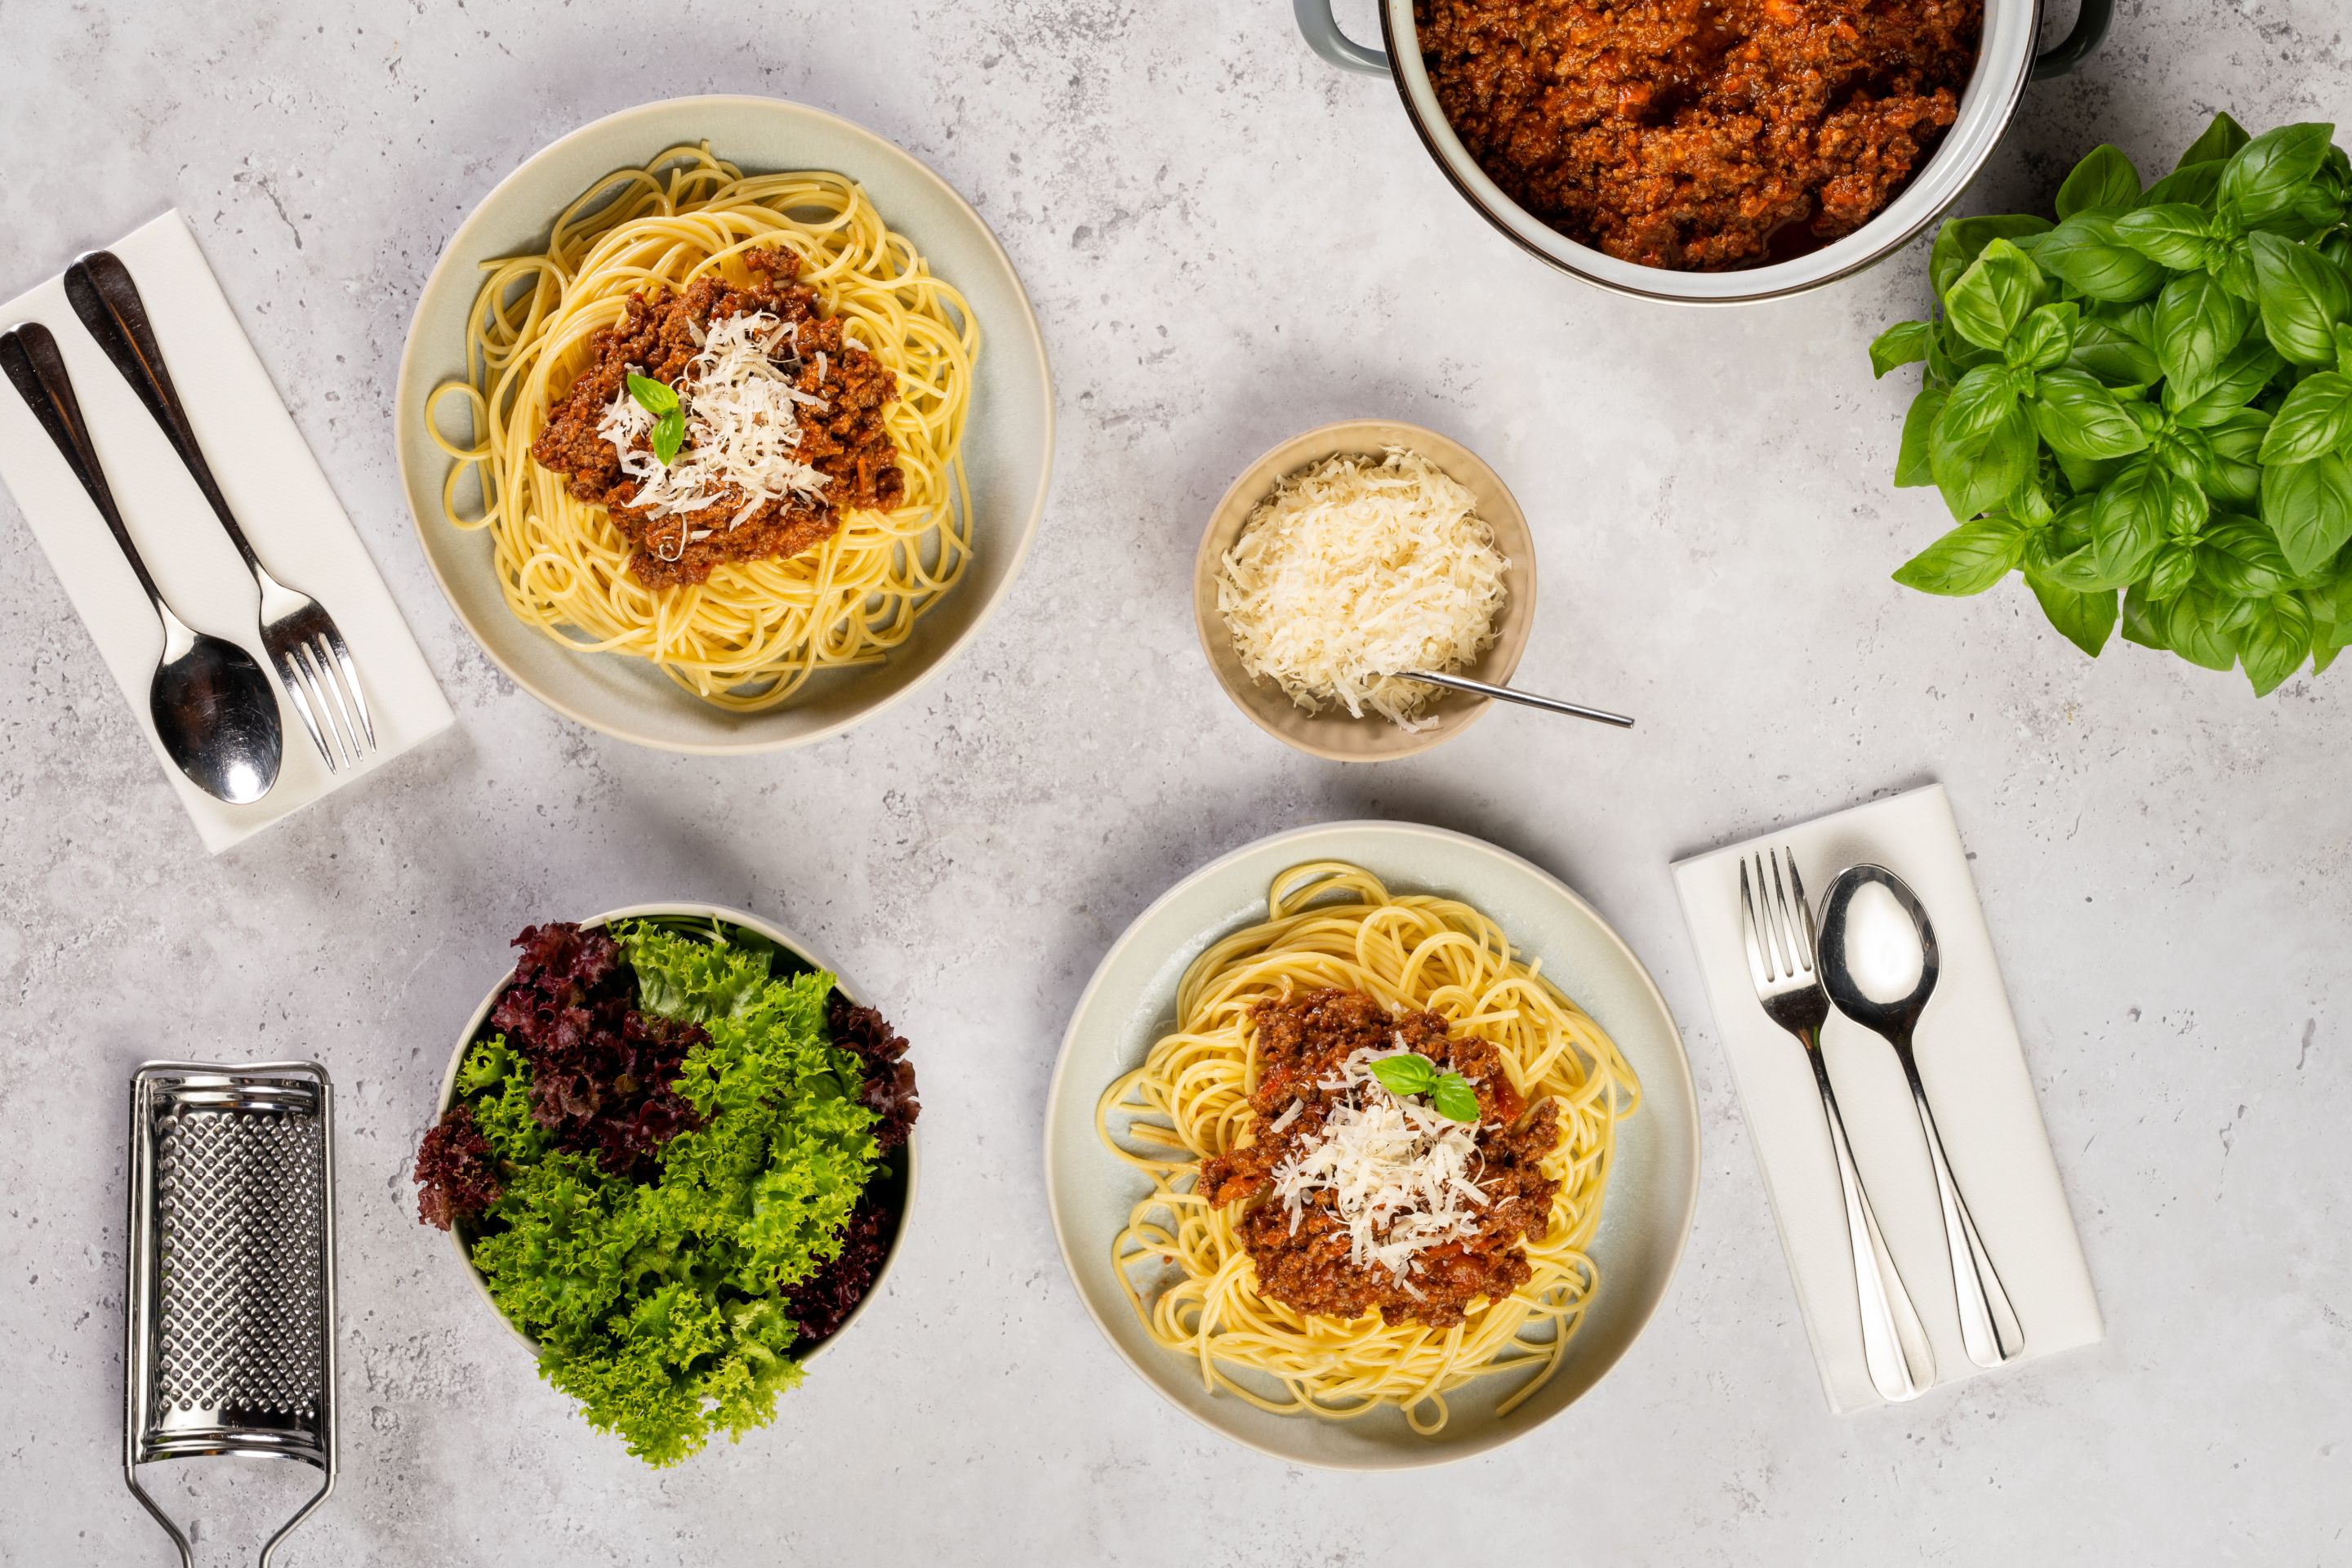 Спагети Болонезе с пармезан и листенца босилек, поднесени със зелена салата, допълнително пармезан и босилек.